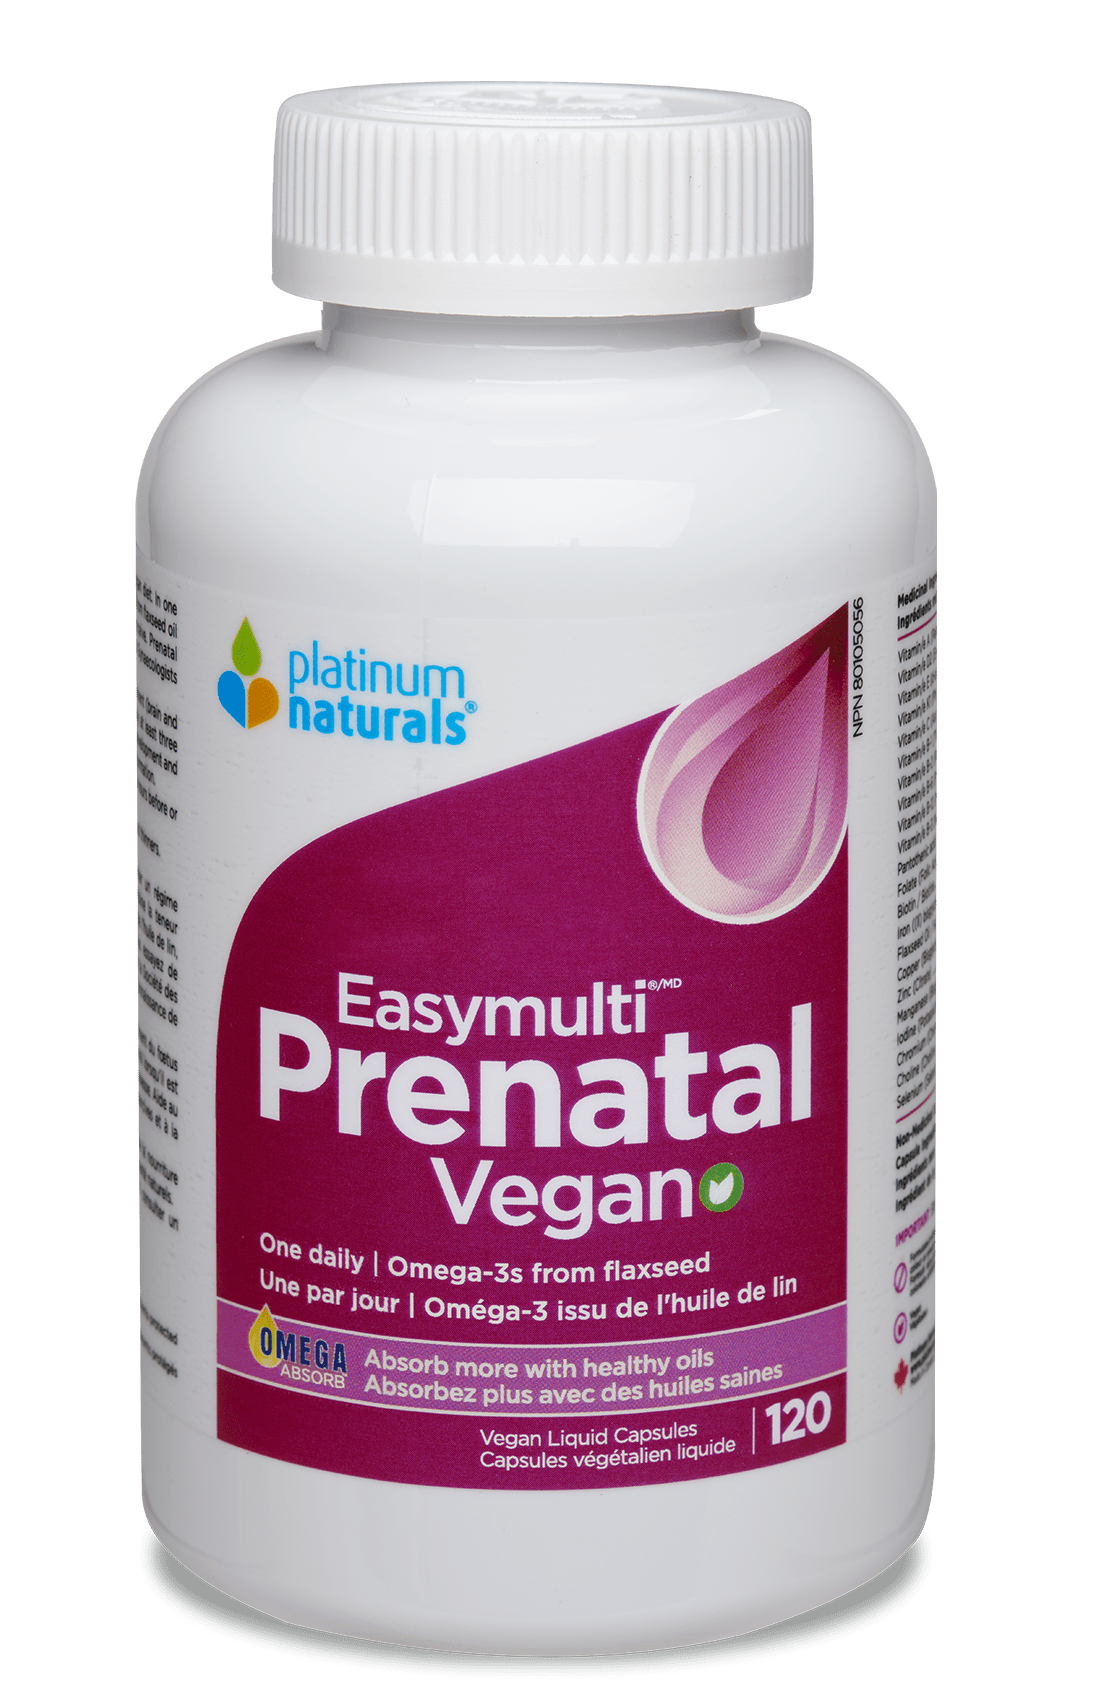 Prenatal Easymulti Vegan Prenatal cg-dev-platinumnaturals 120 